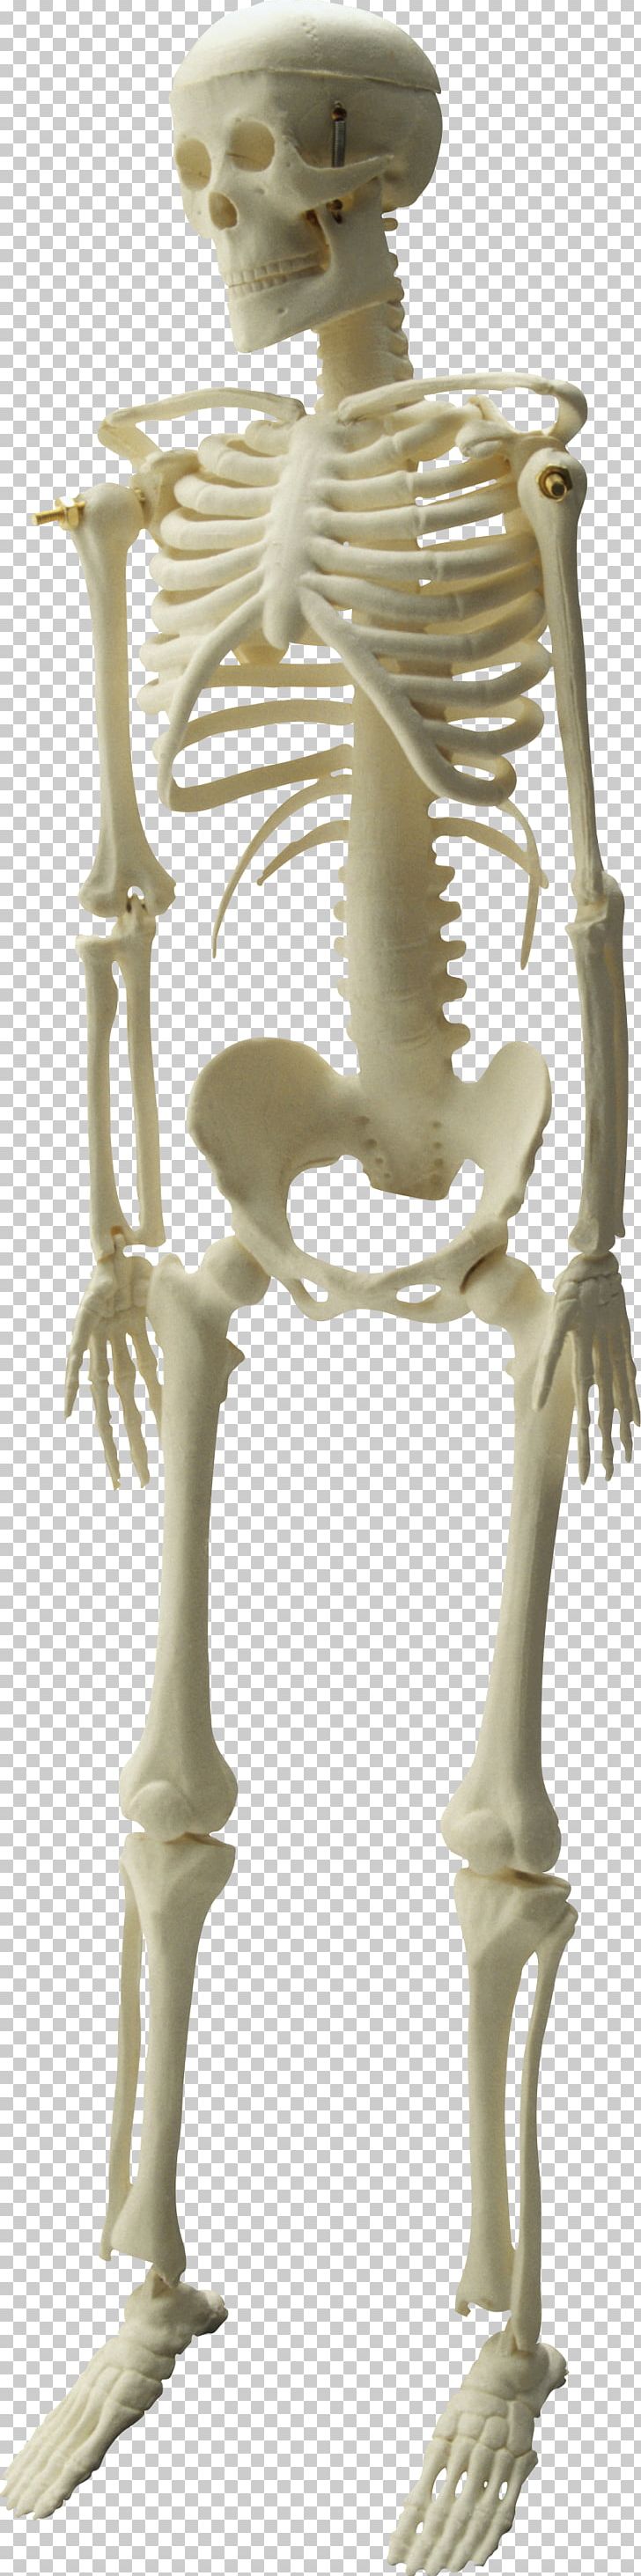 Human Skeleton Skull PNG, Clipart, Bone, Classical Sculpture, Download, Endoskeleton, Exoskeleton Free PNG Download